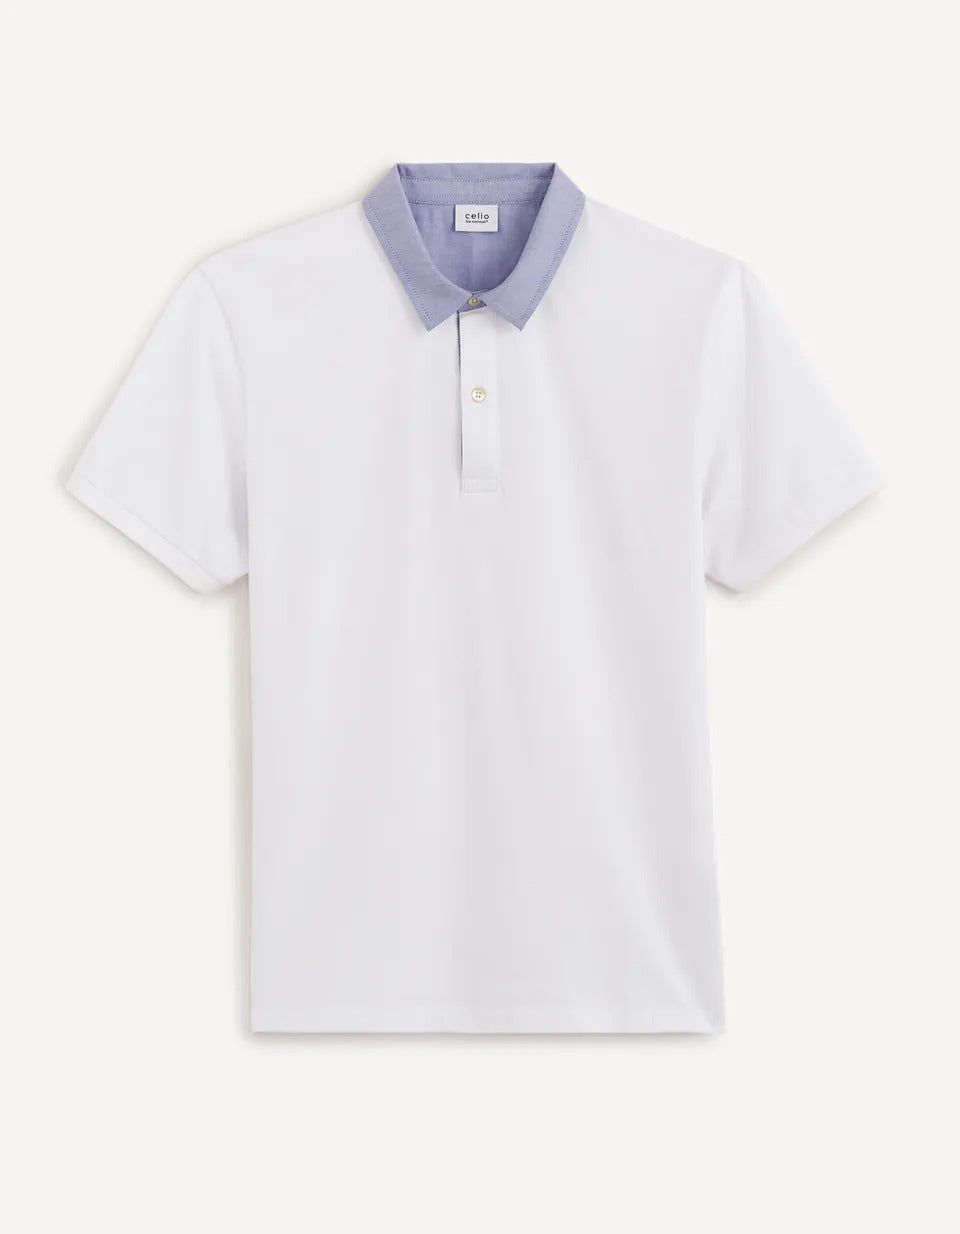 Pique Polo Shirt Collar 100% Cotton - White - 03